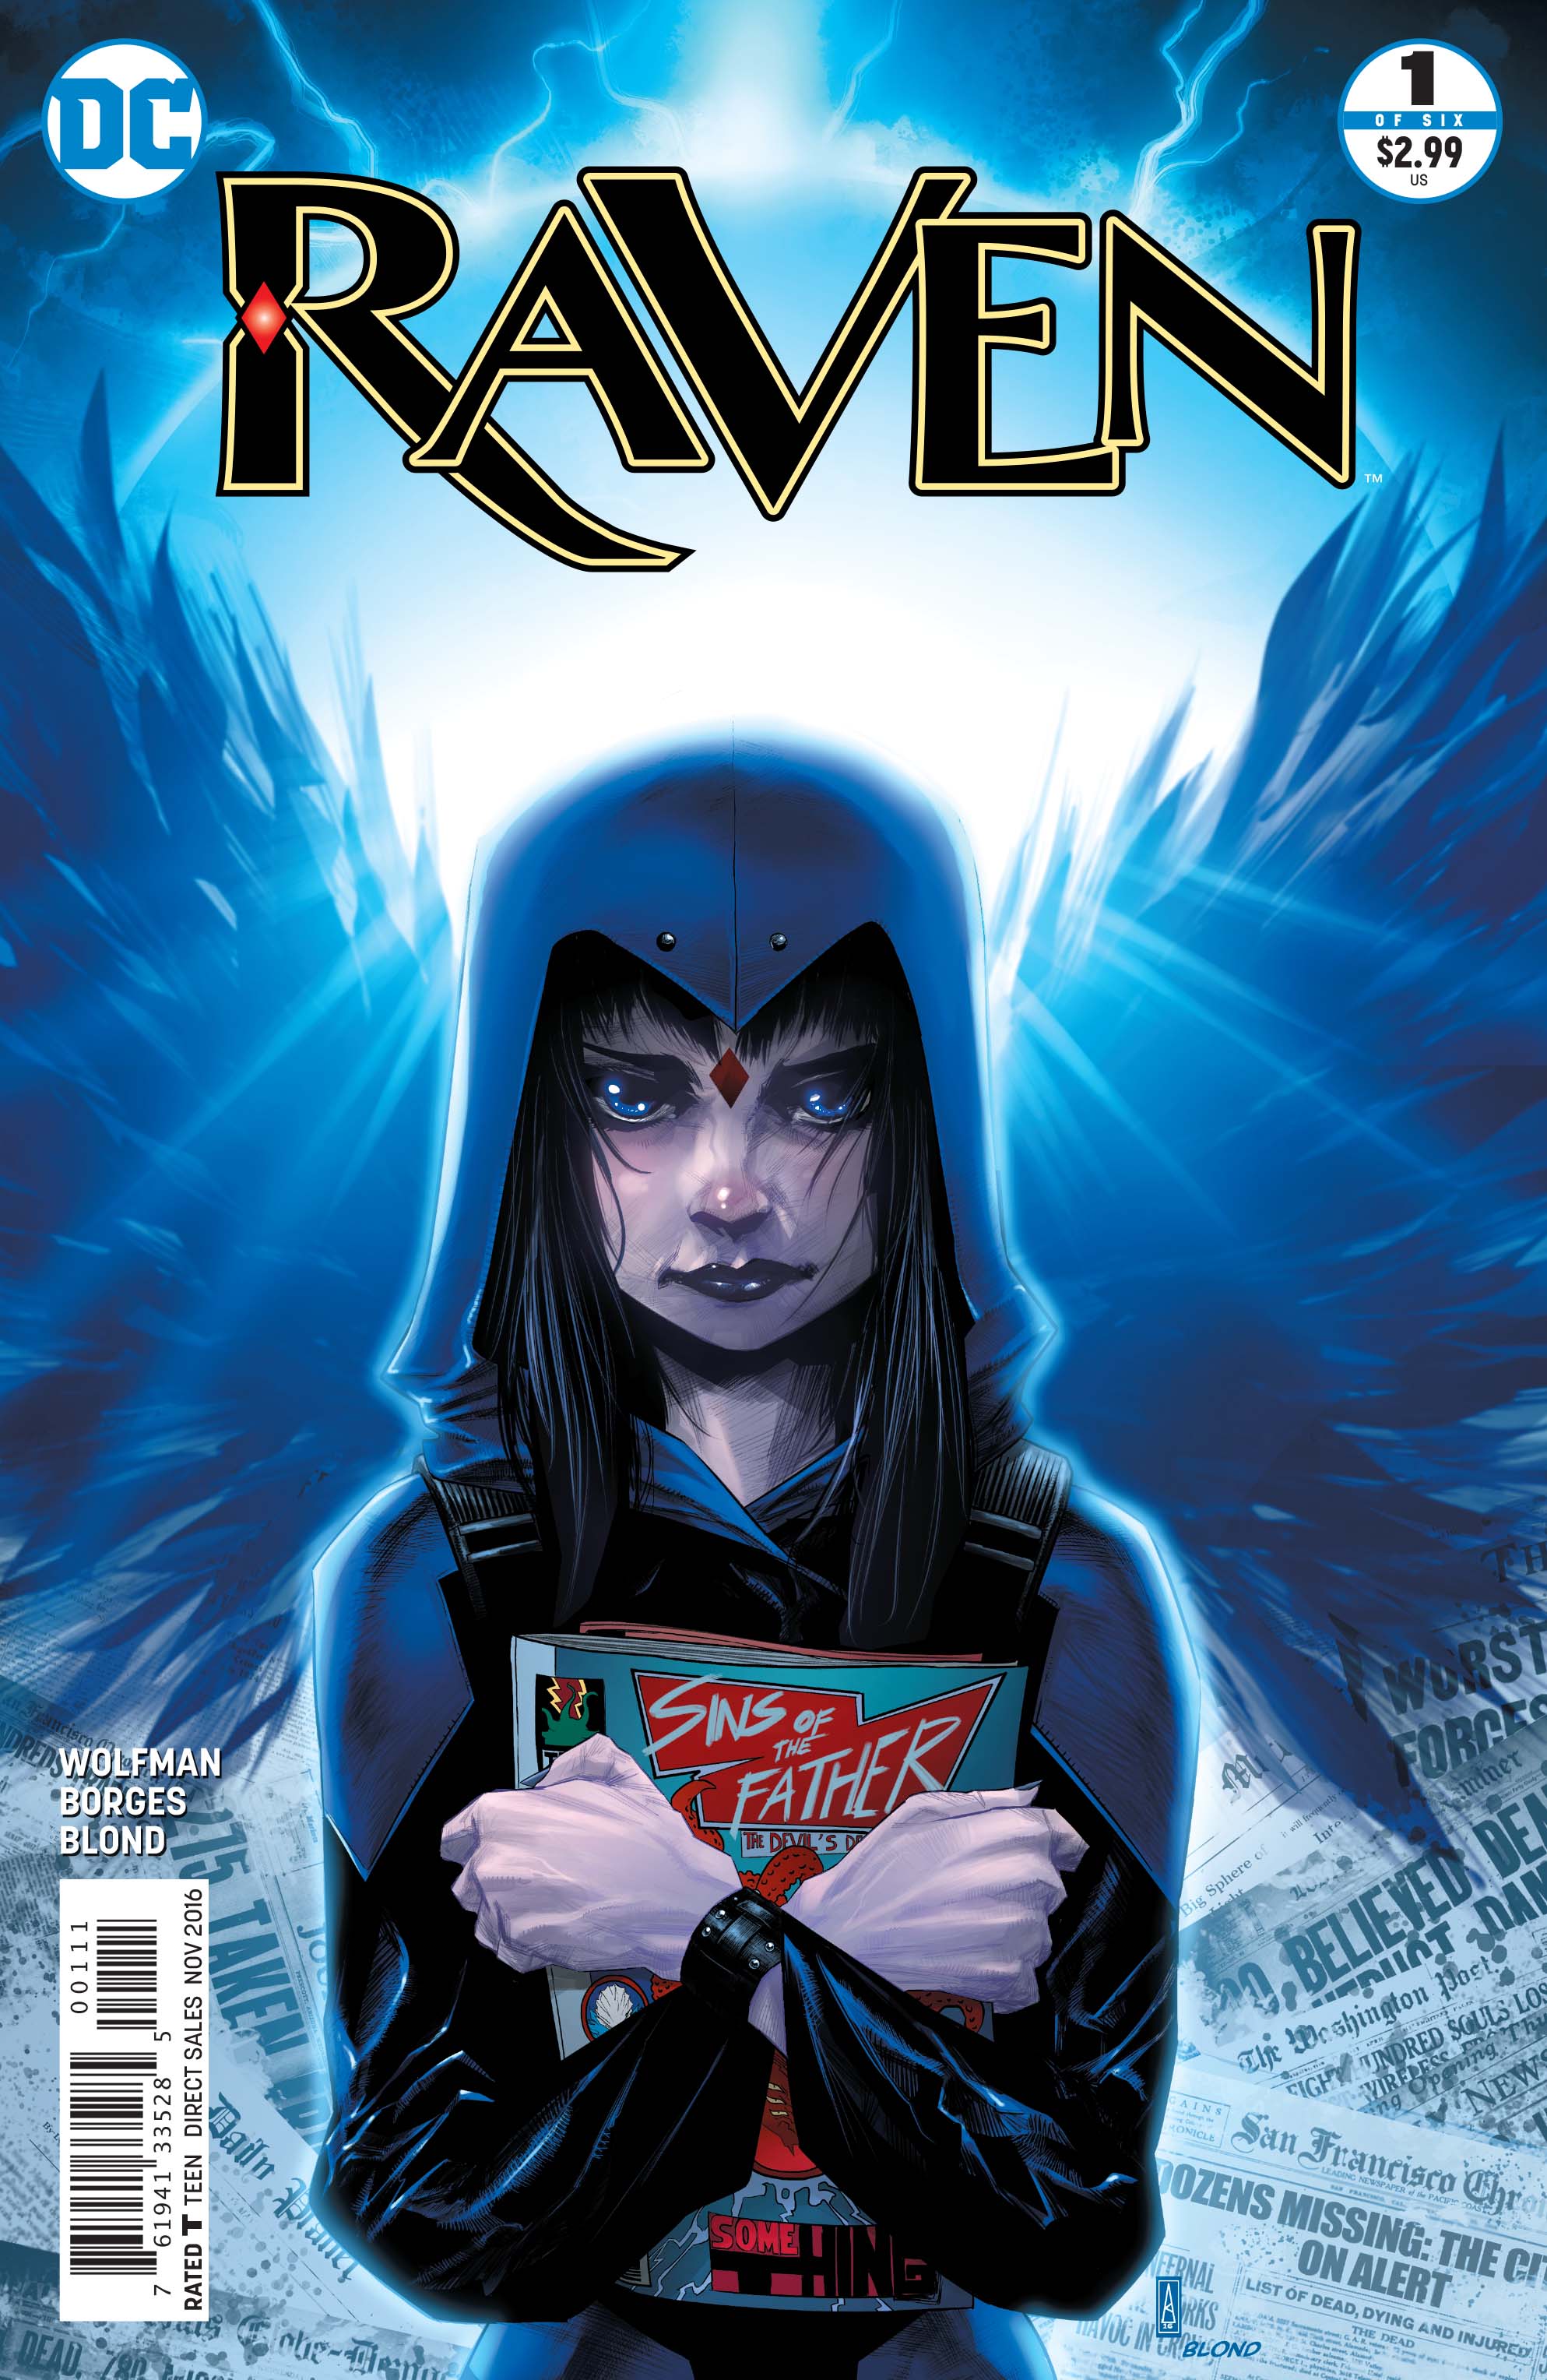 Raven #1 Review